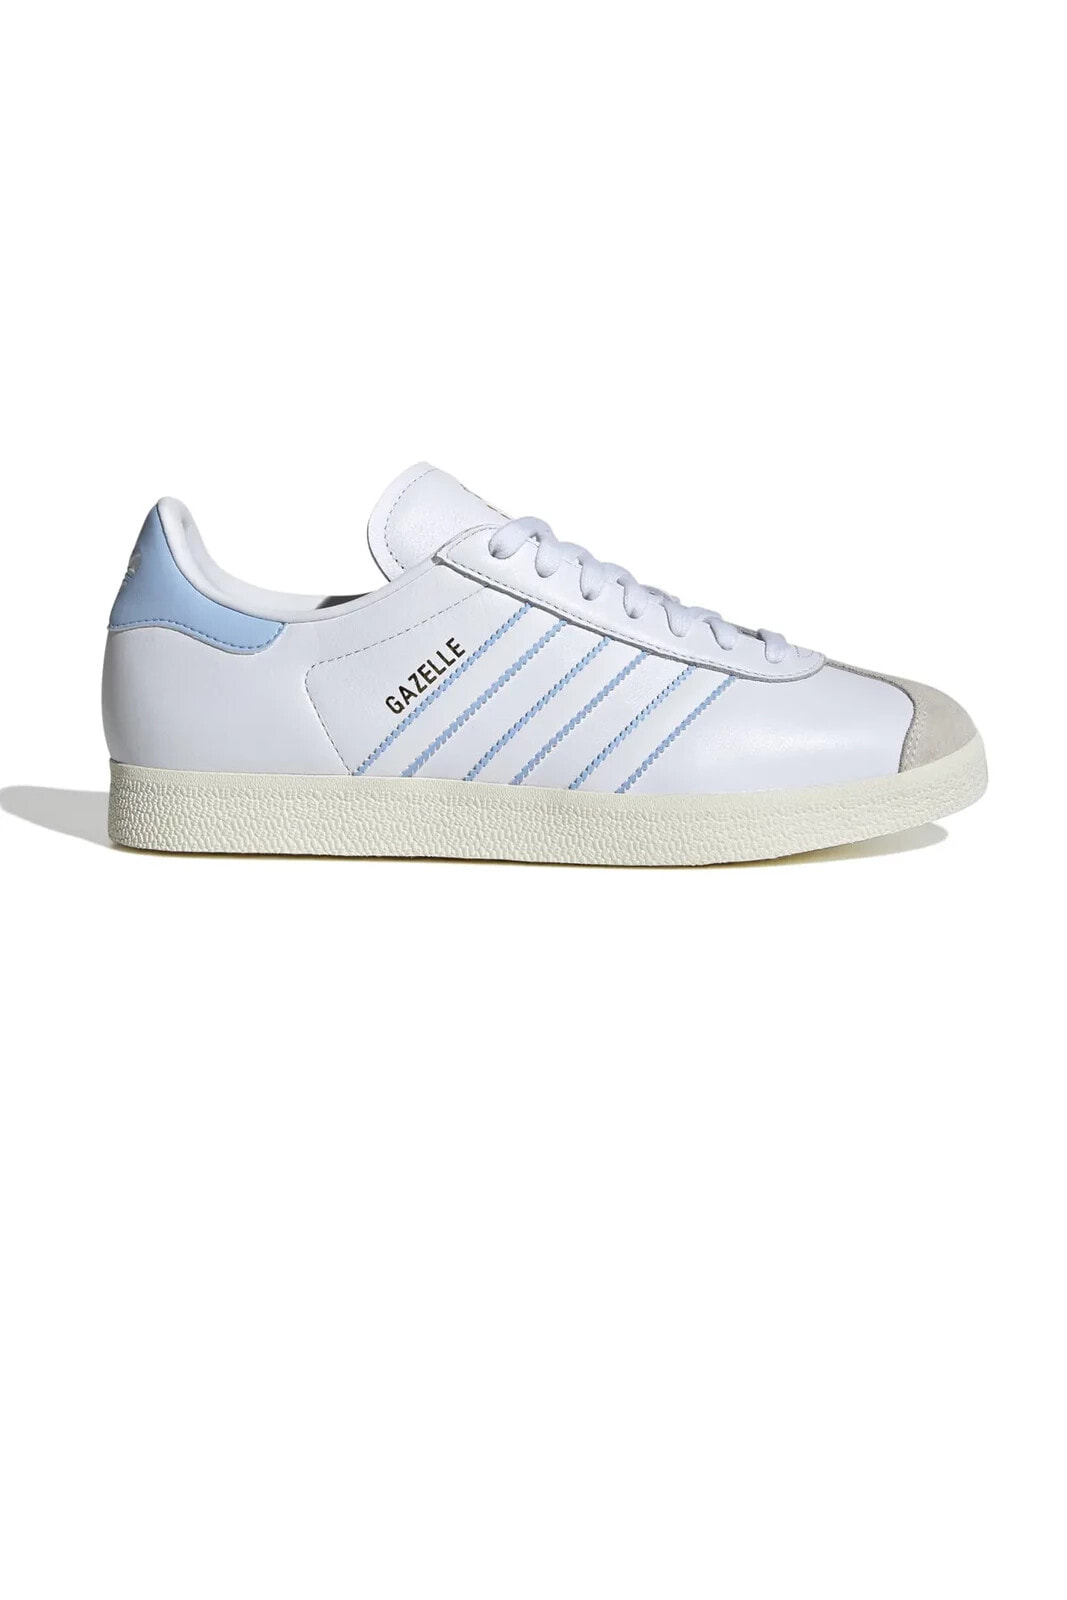 ID3718-E adidas Gazelle Arjantin Erkek Spor Ayakkabı Beyaz